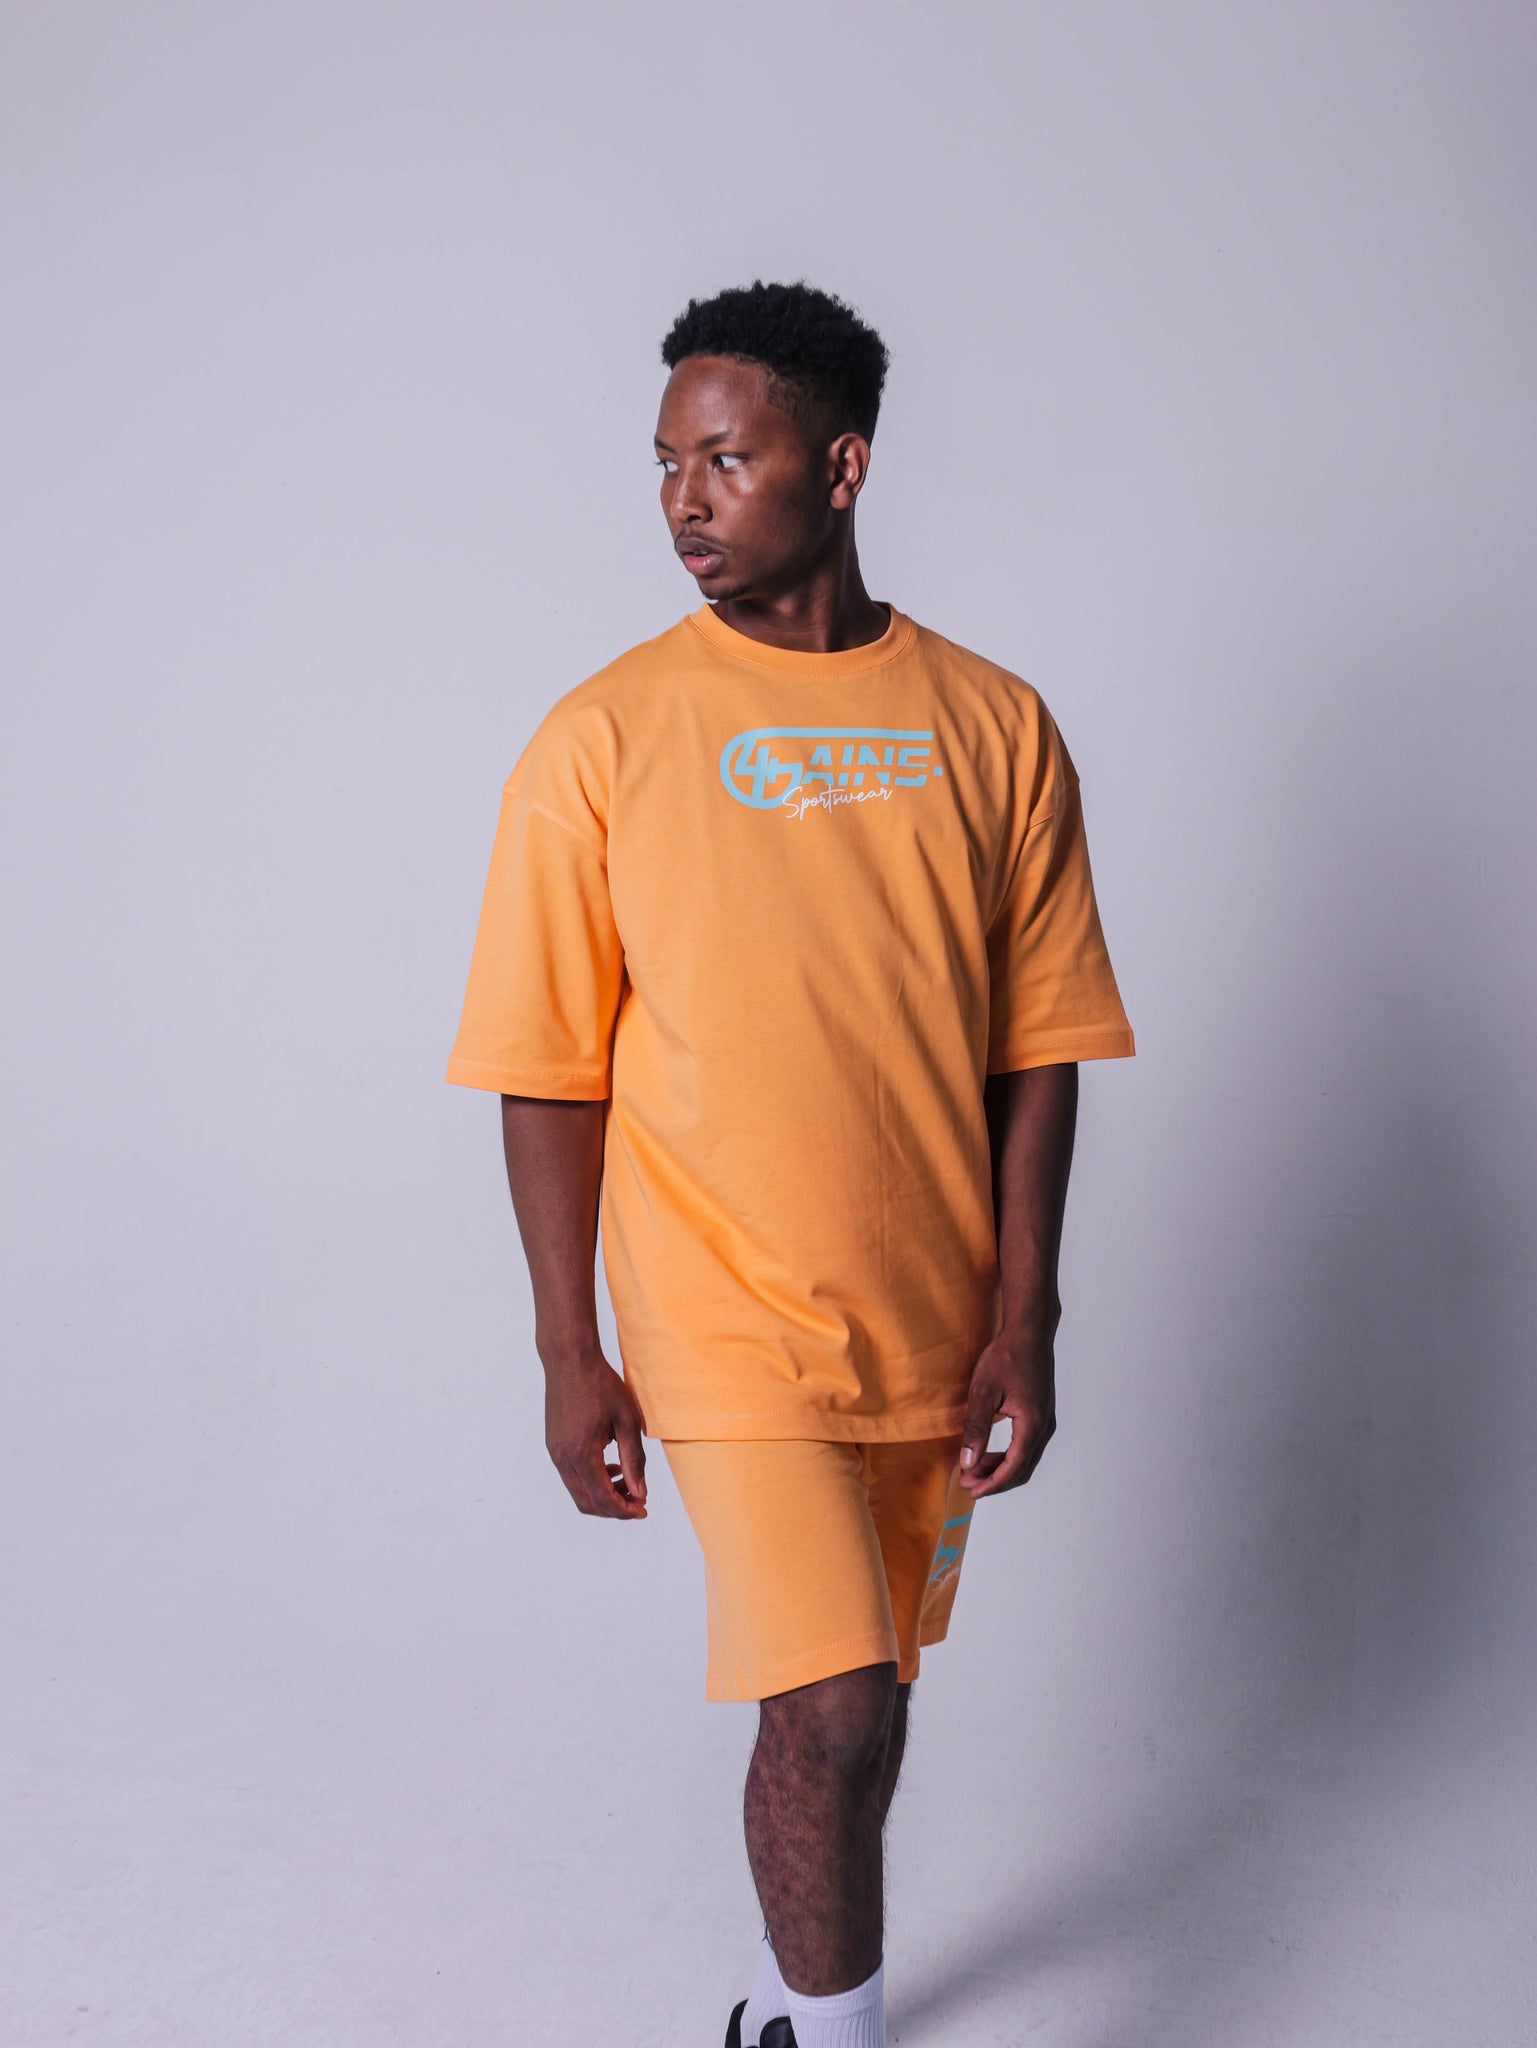 4GAINS Sportswear oversized T-shirt in der Farbe apricot mit türkisenem Aufdruck an einem männlichen Model